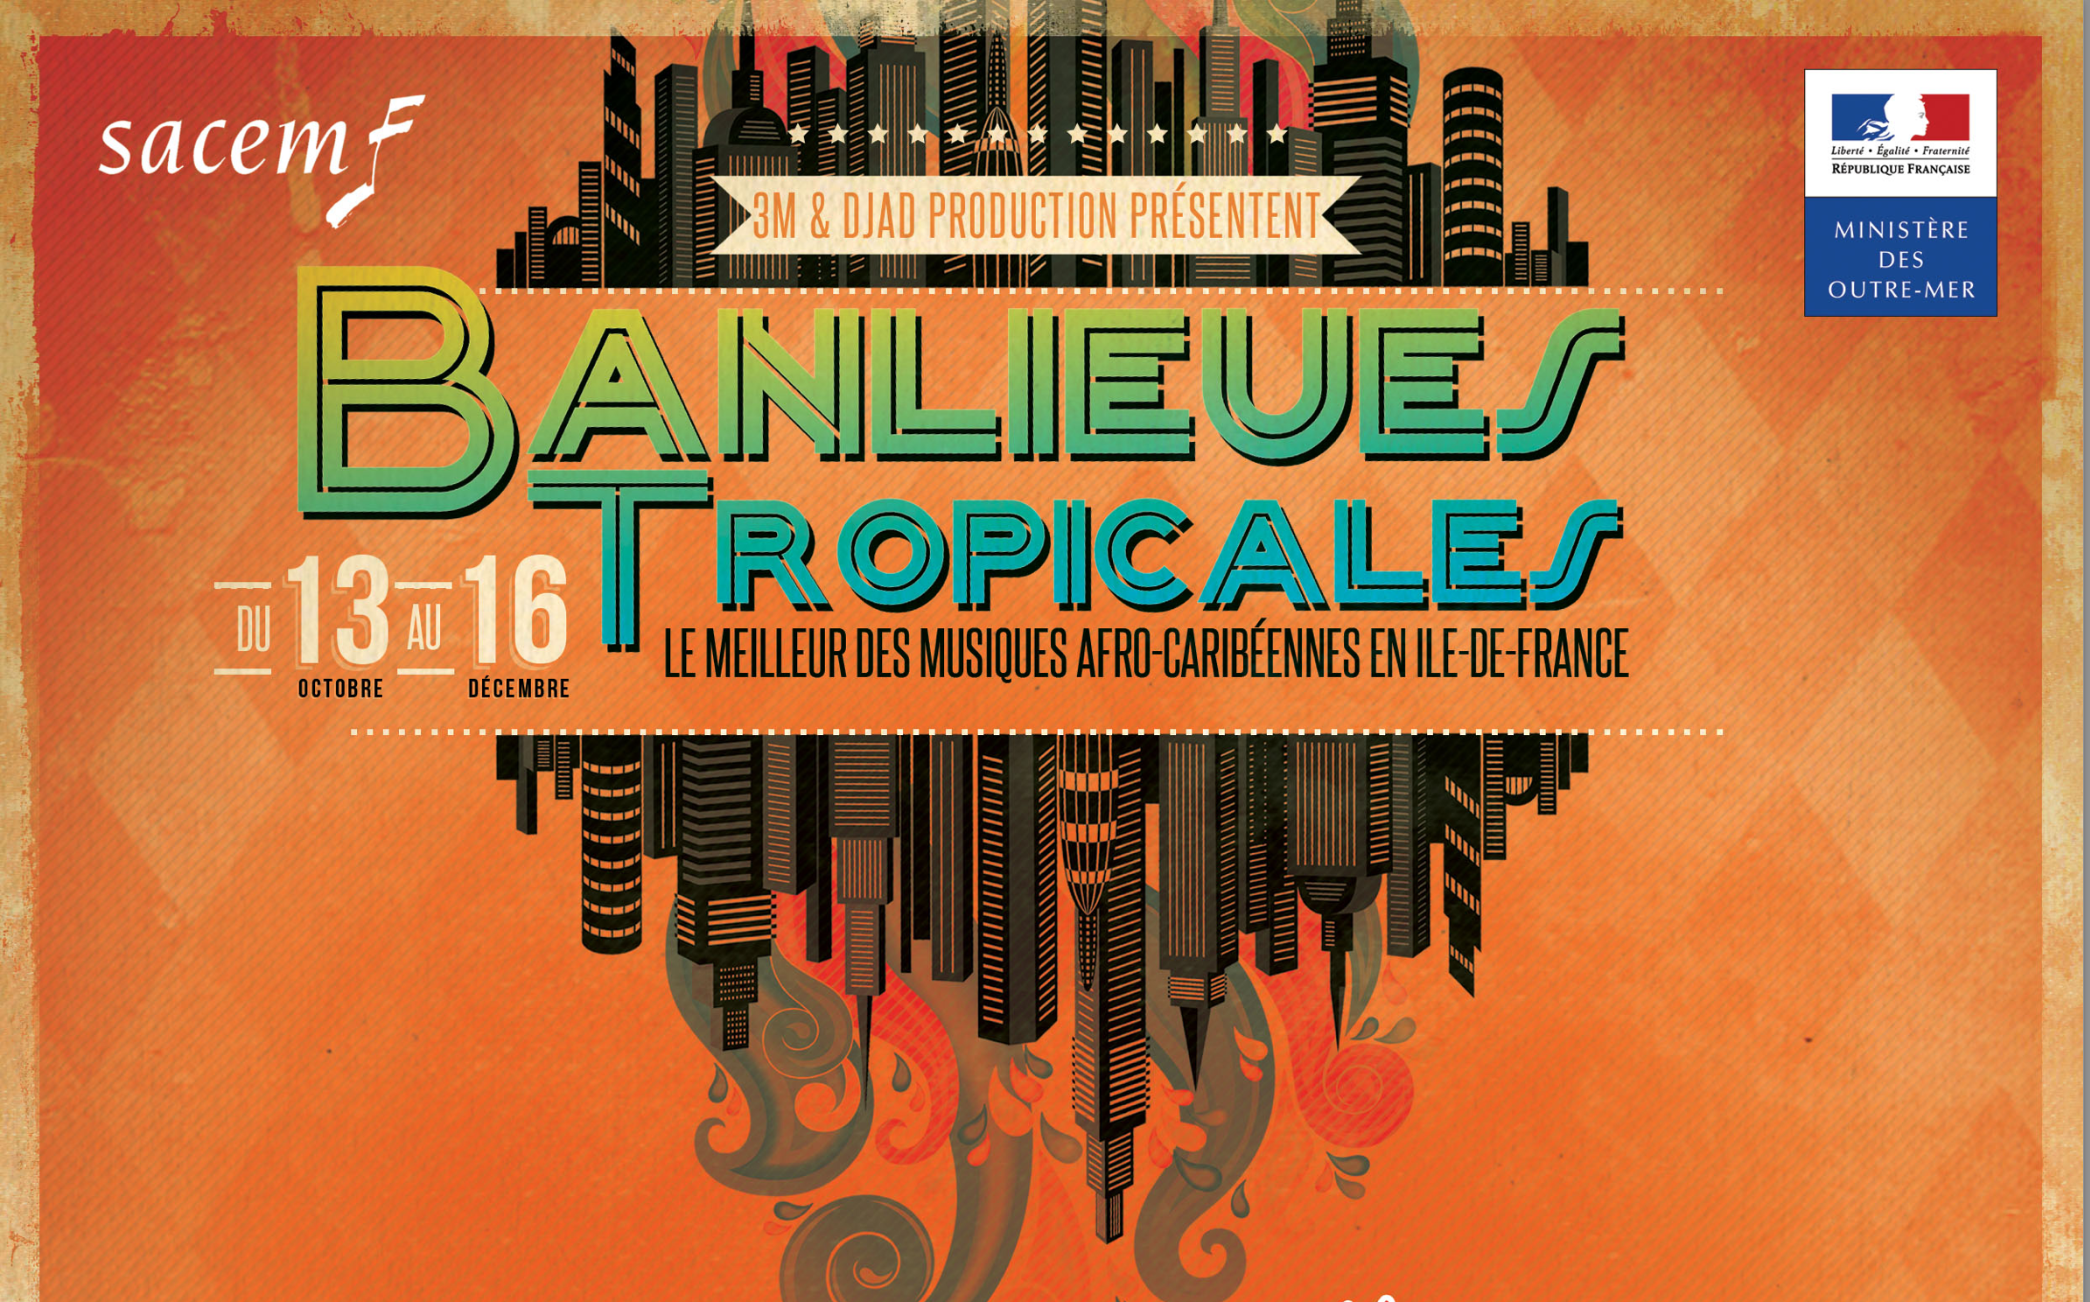 Banlieues Tropicales 2017: L’île-de-France vibrera aux rythmes des musiques créoles durant deux mois